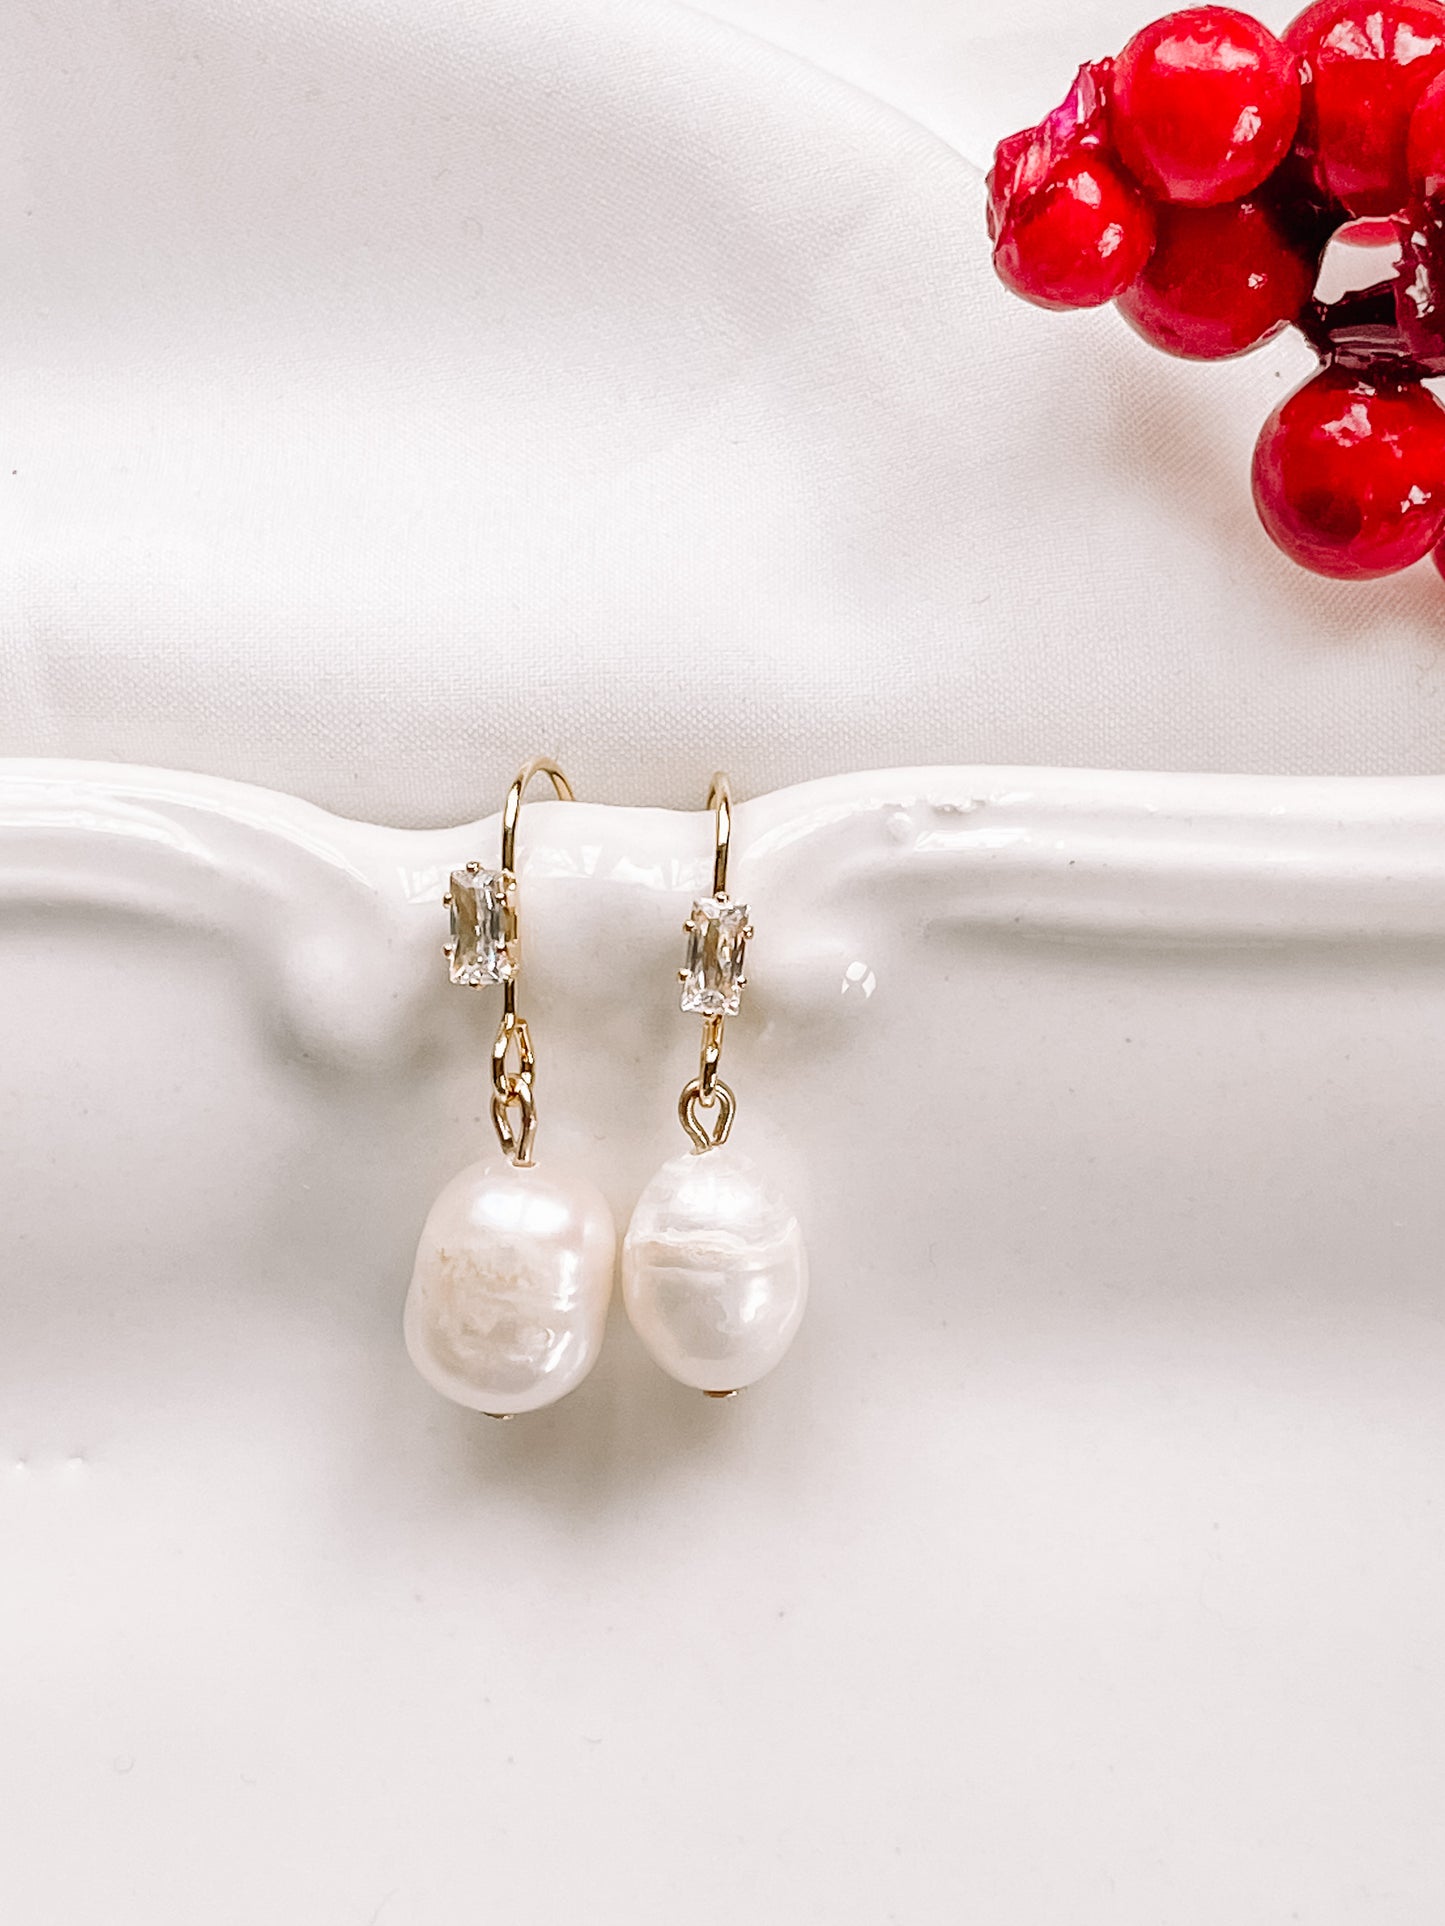 Staple pearl earrings